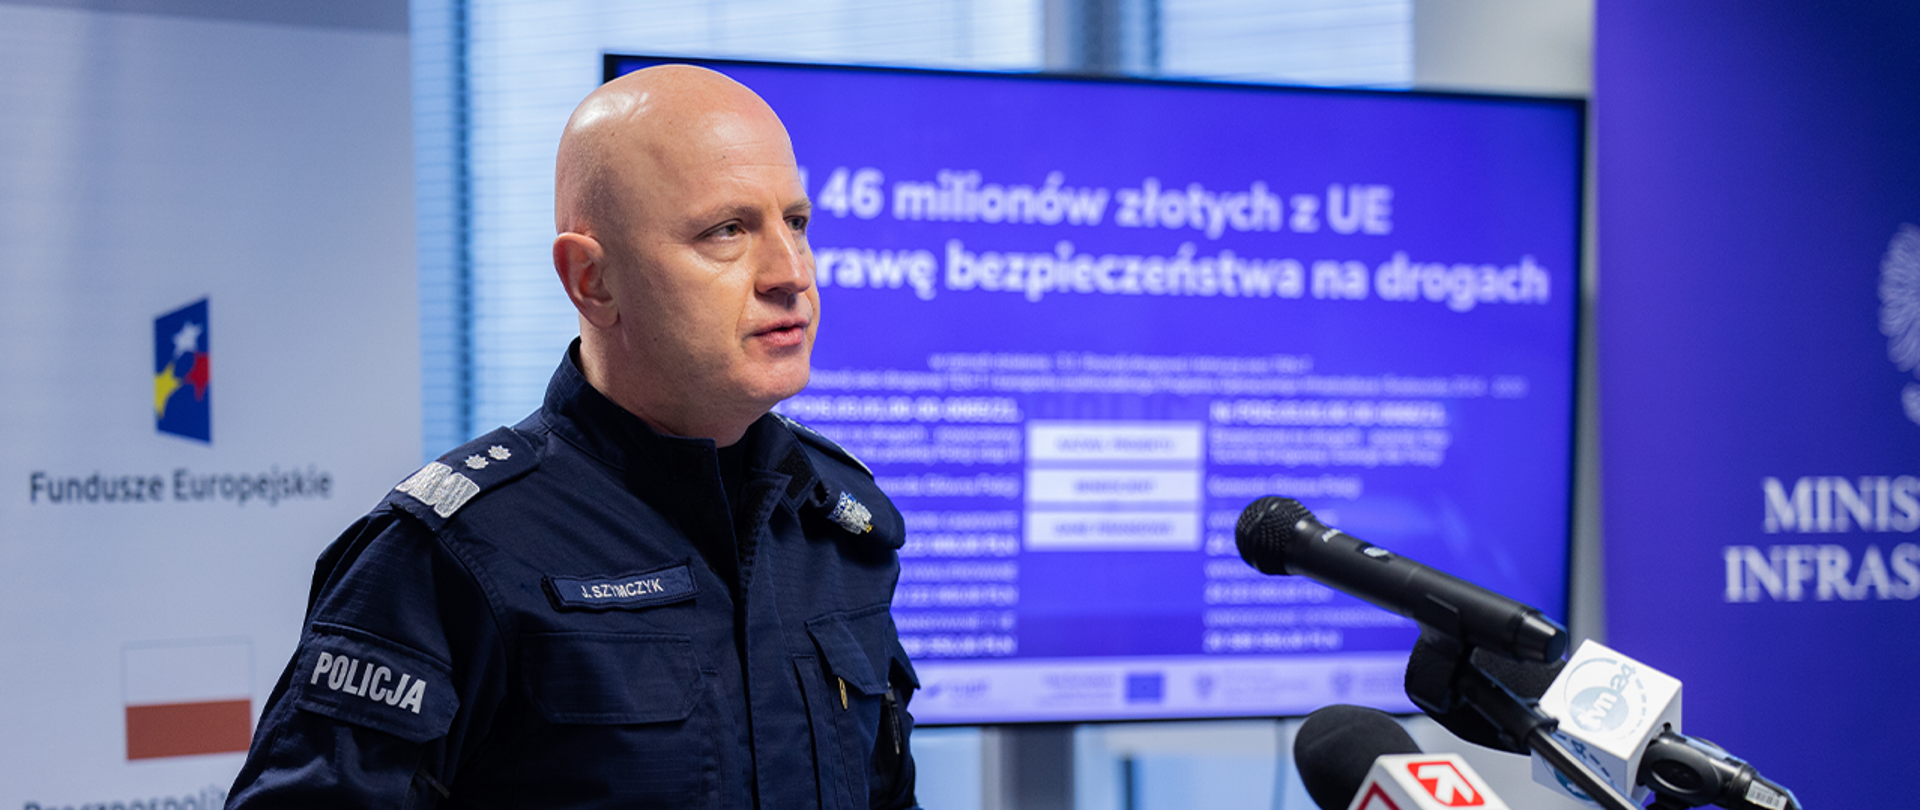 Zdjęcie przedstawia komendanta głównego Policji gen. insp. Jarosława Szymczyka podczas wypowiedzi na konferencji prasowej.